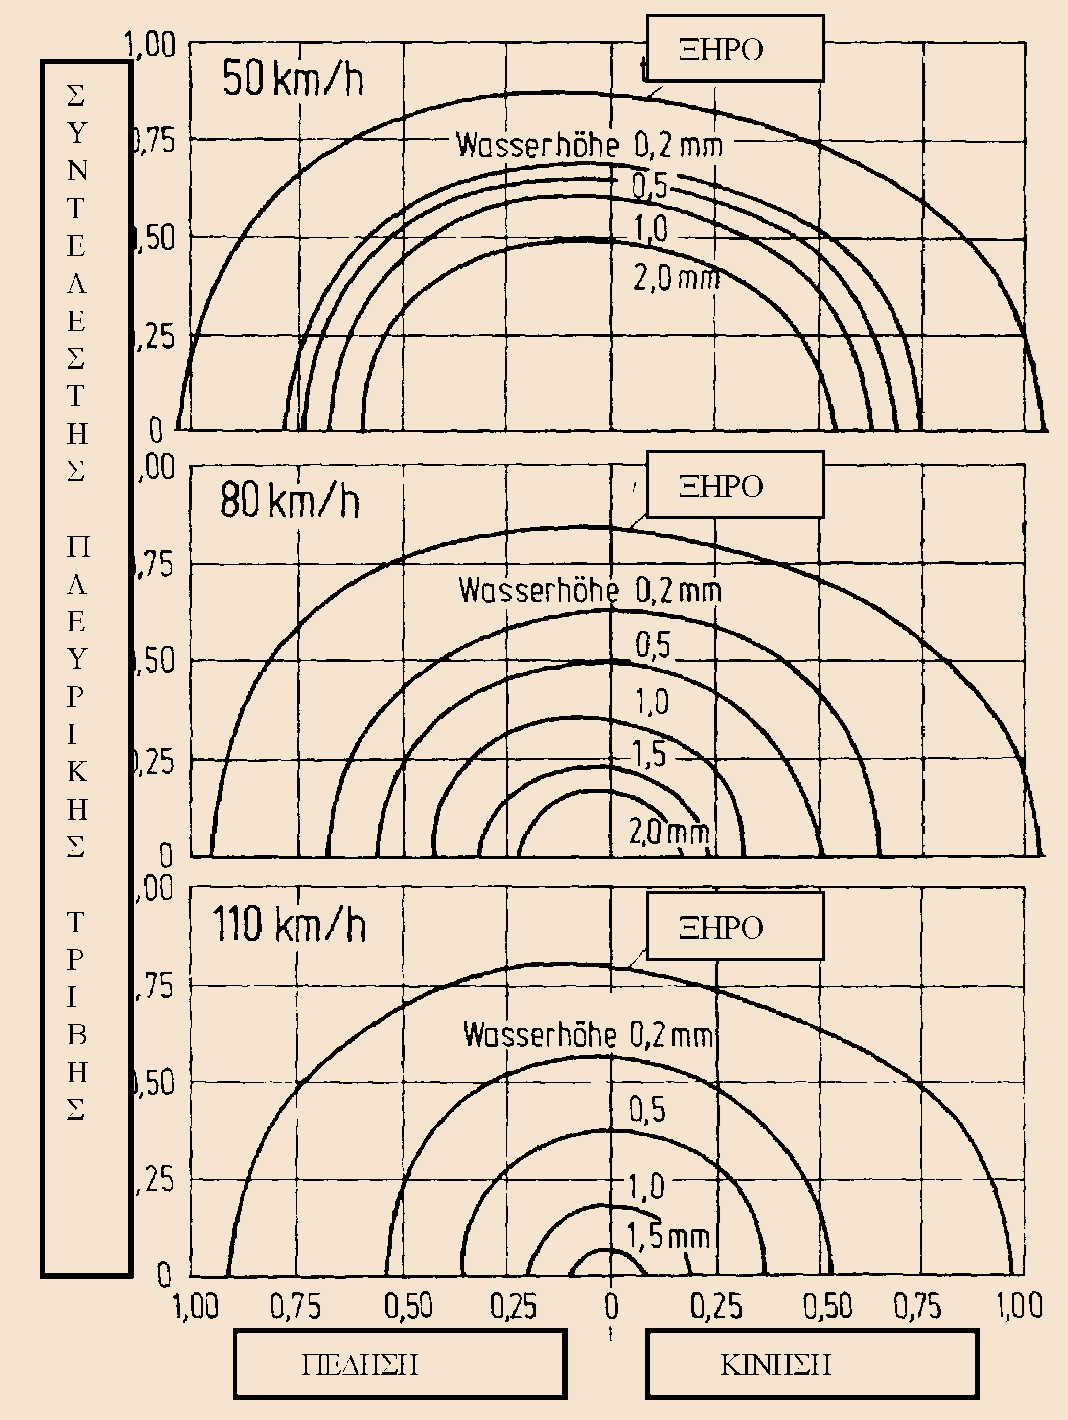 ολίσθησης σε συνάρτηση με το ύψος του υδάτινου υμένα απεικονίζεται στο σχήμα 2.37.